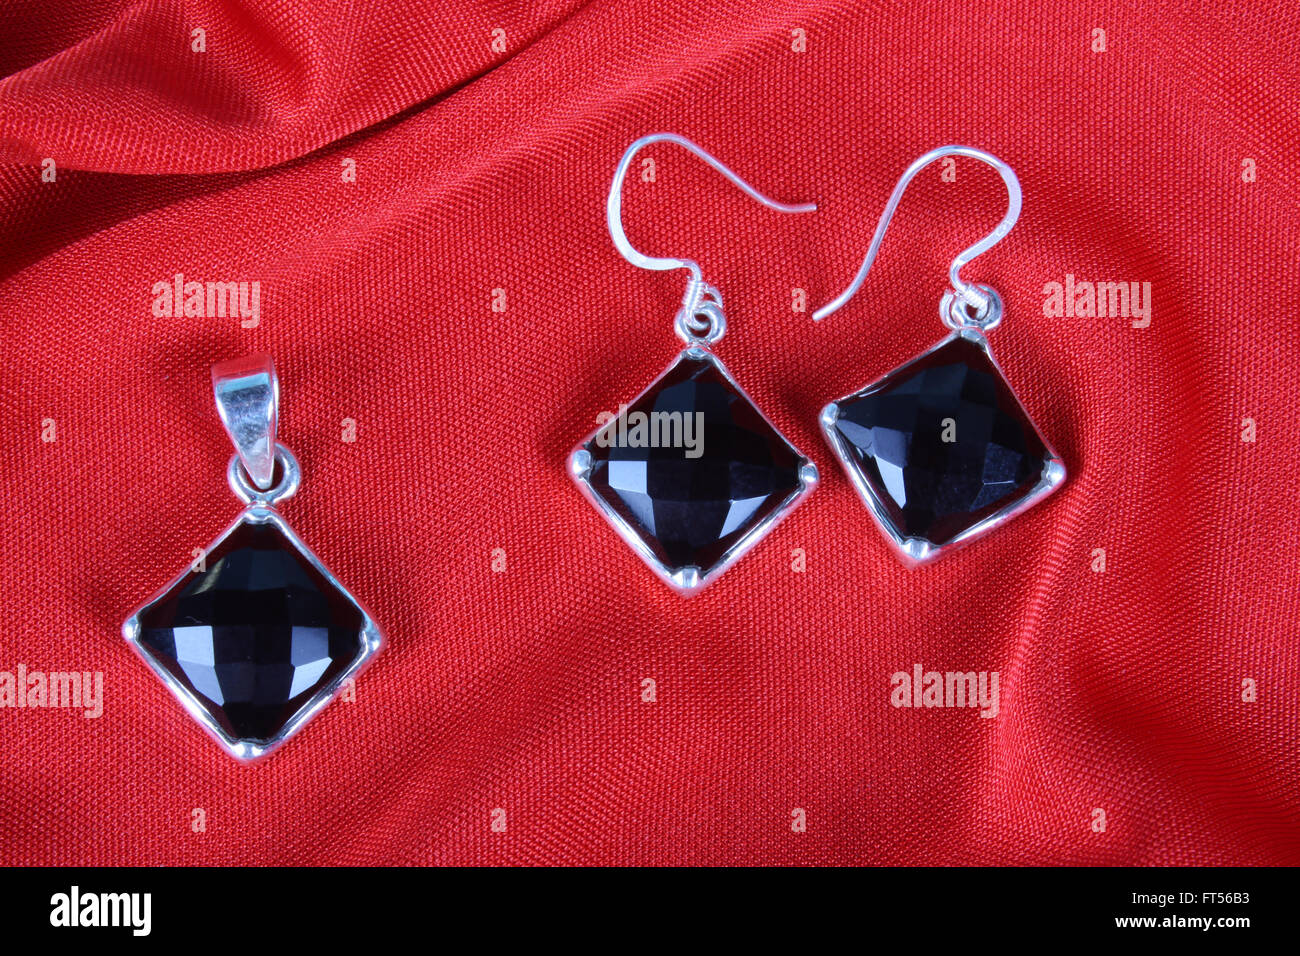 Un set di nero onyx gioielli realizzati in argento costituito da un telecomando e un paio di orecchini, sul tessuto rosso. Foto Stock